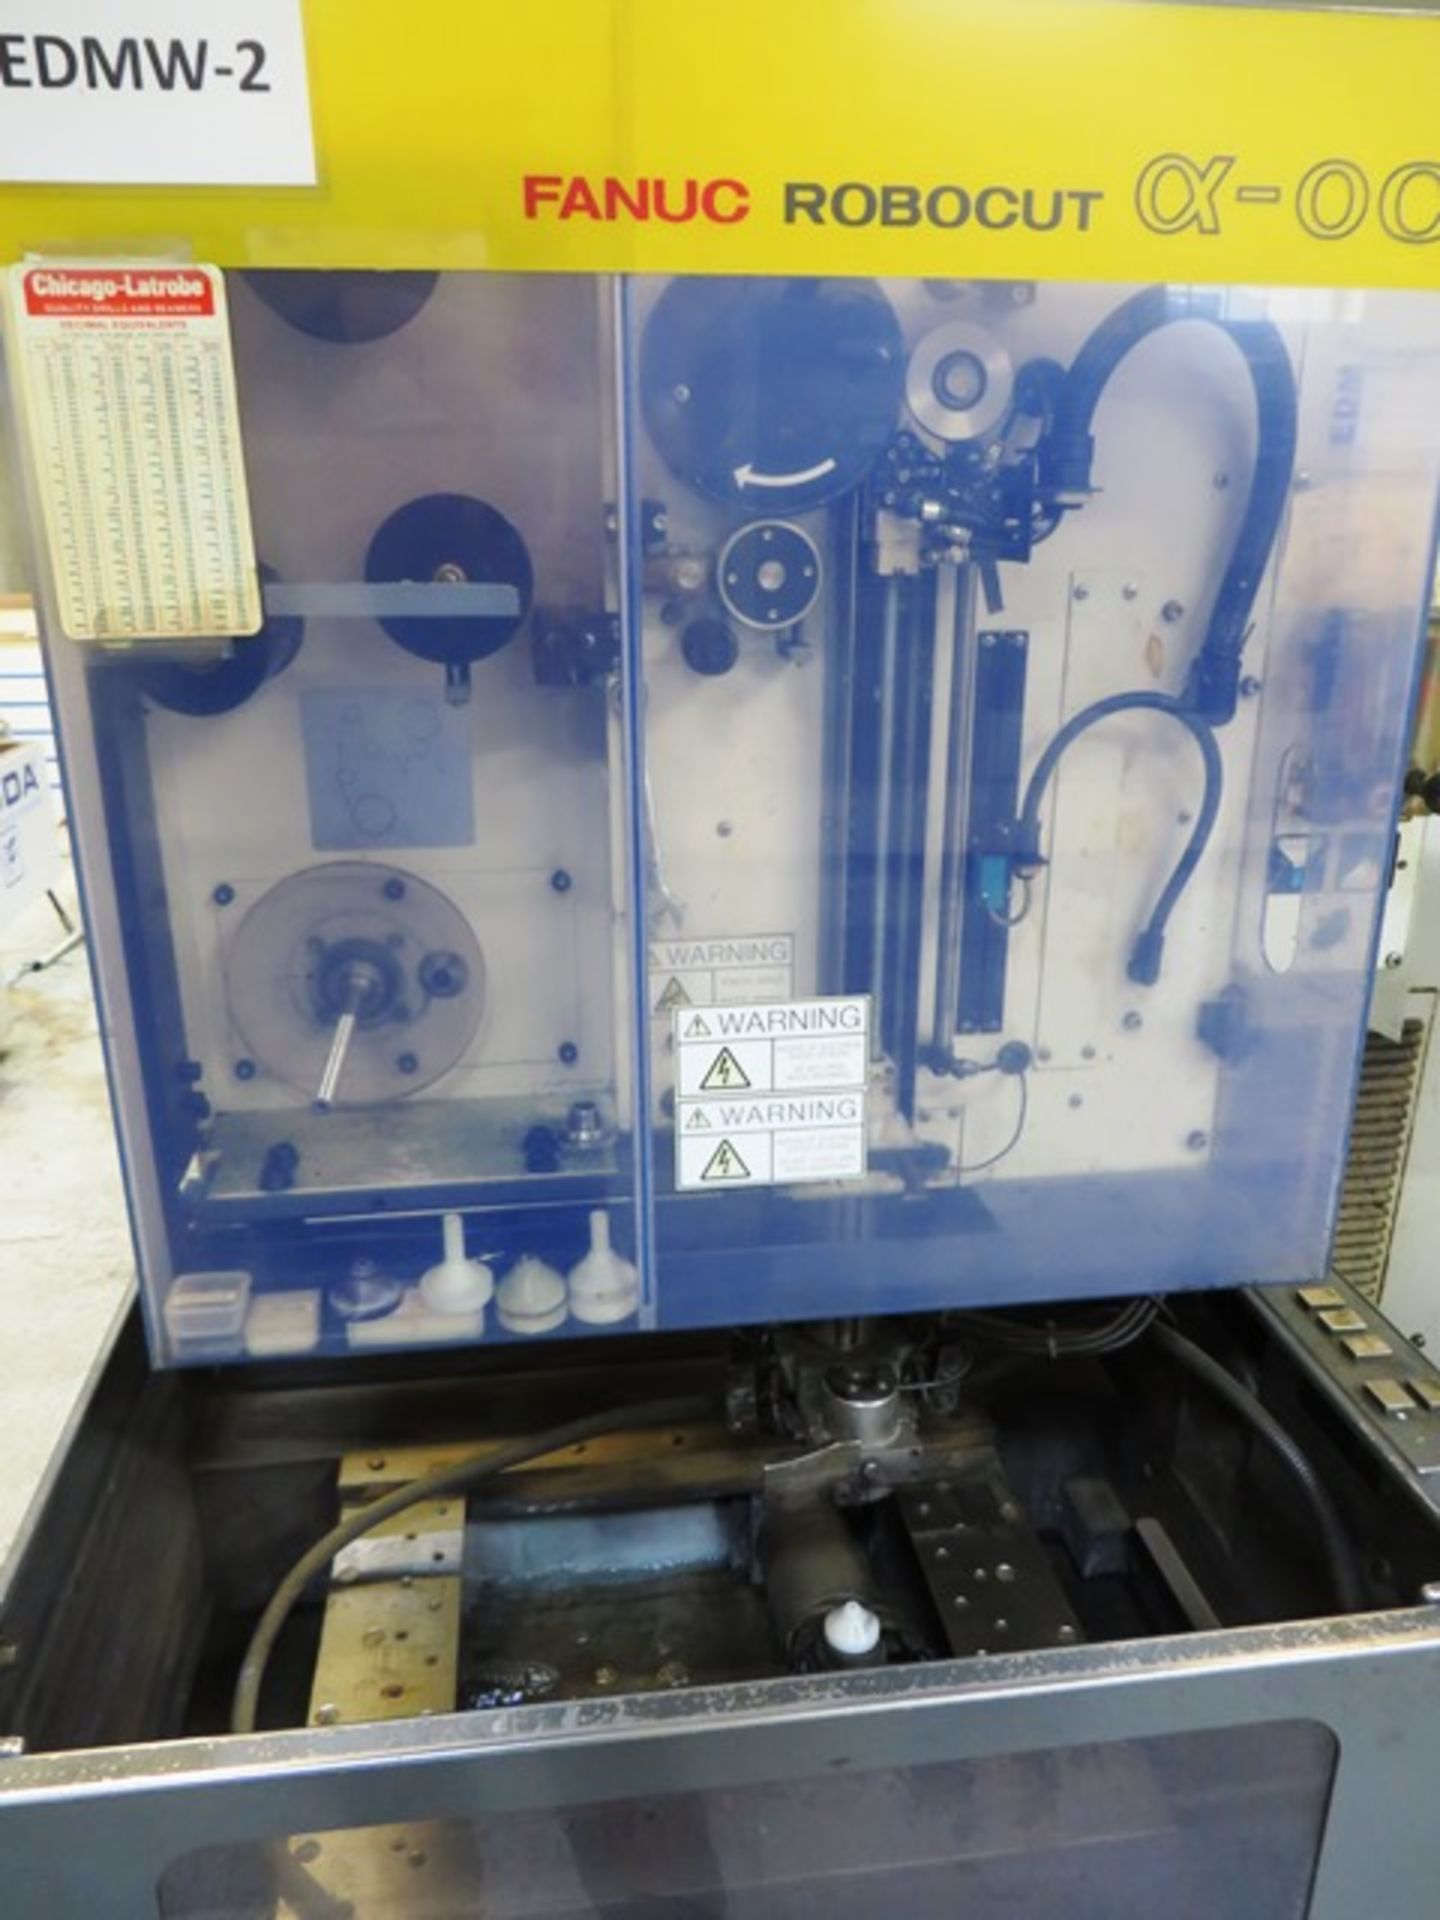 Fanuc Robocut a-OC CNC Wire EDM Machine - Image 4 of 4